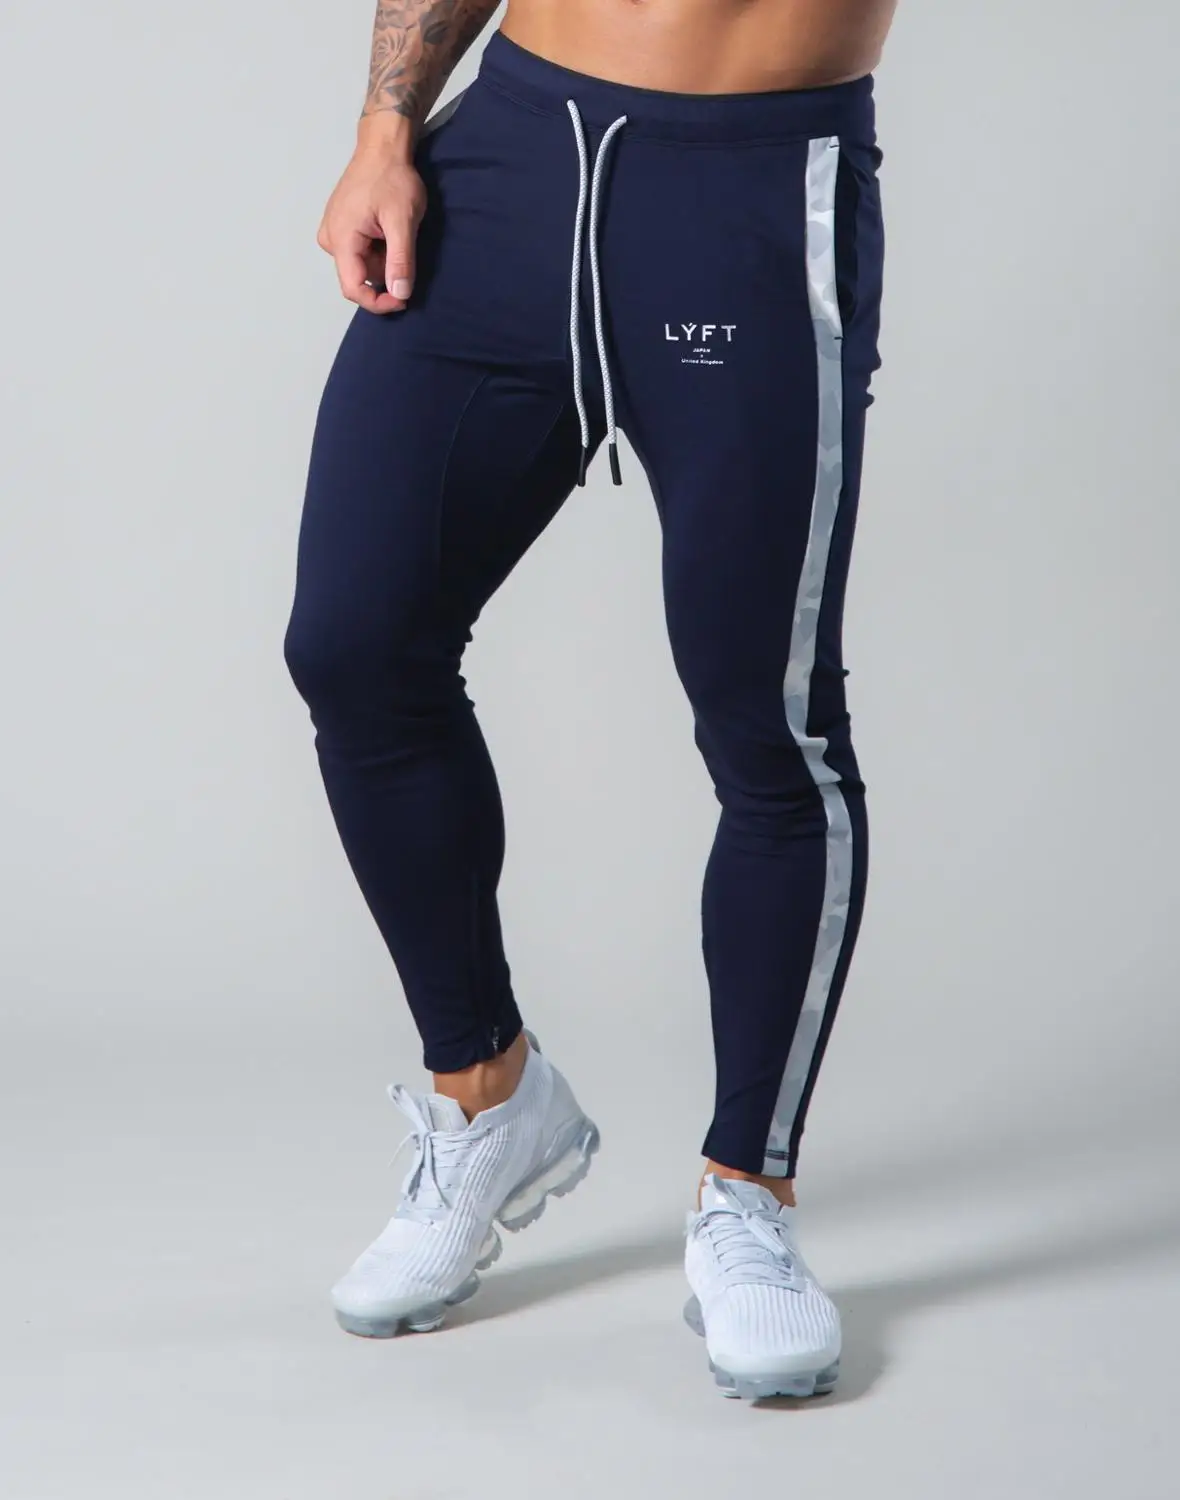 JP & UK – pantalon de Sport en coton pour homme, coupe ajustée, Jogging, musculation, survêtement d'entraînement, Fitness